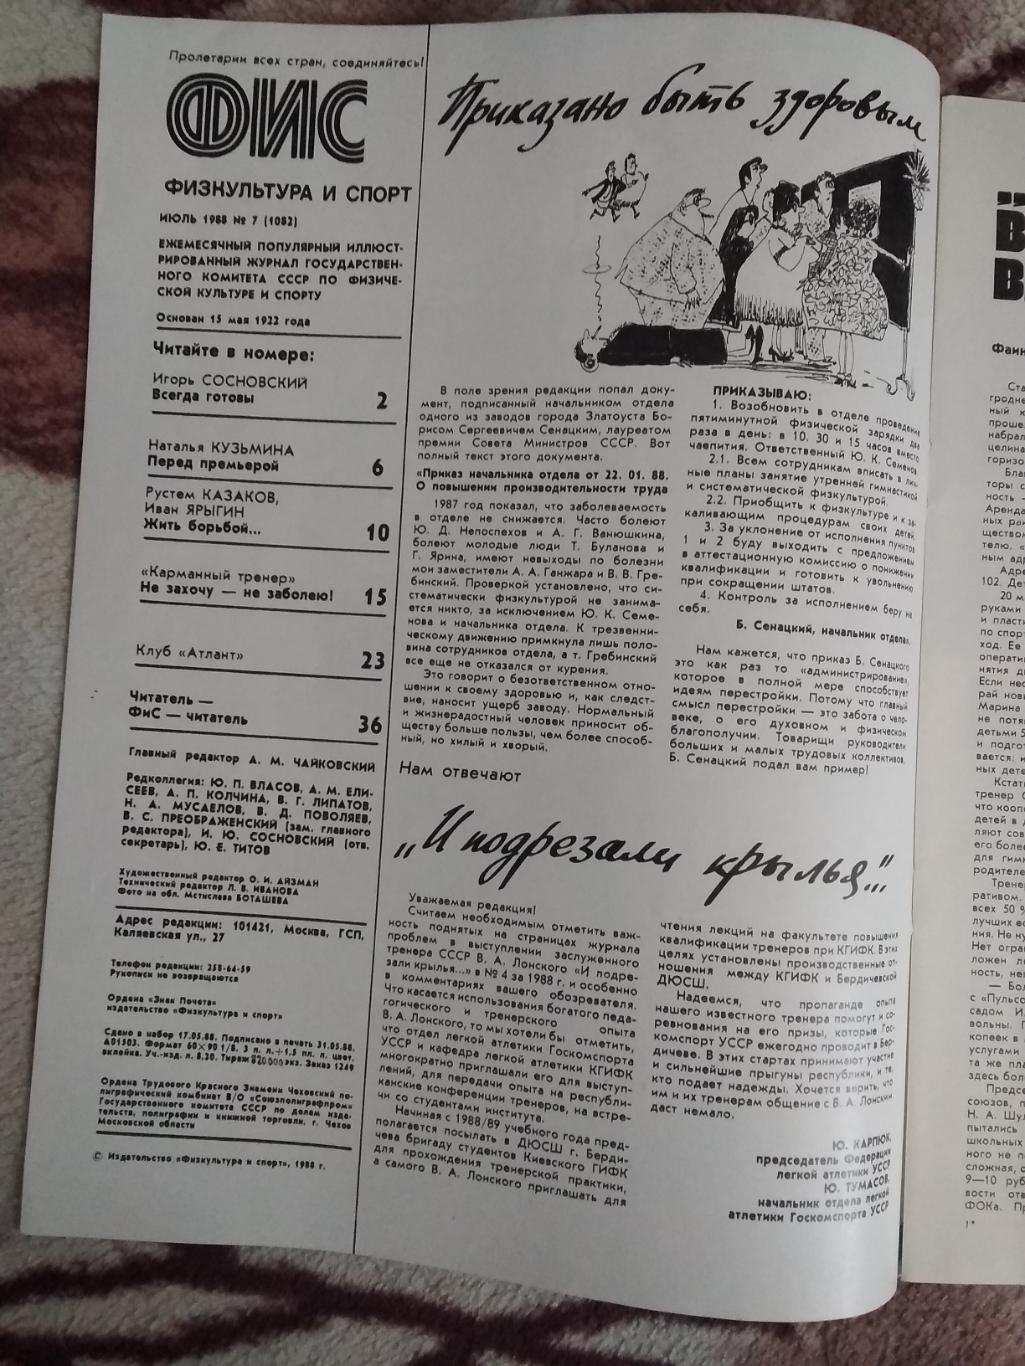 Журнал.Физкультура и спорт № 7 1988 г. (ФиС). 1